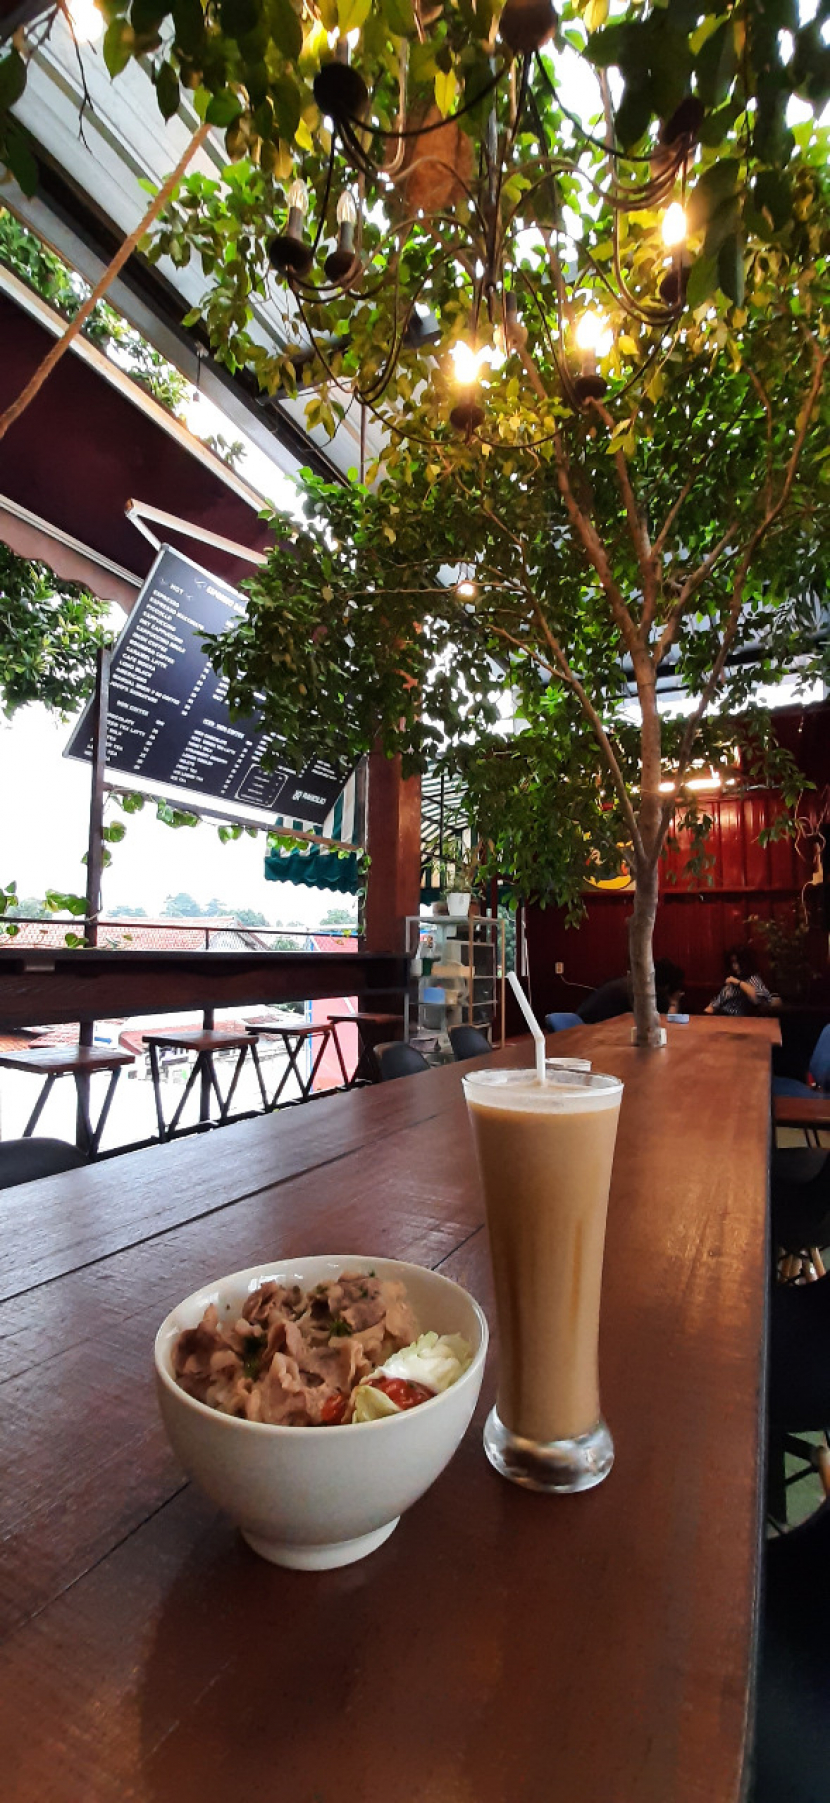  Joco Coffee, kedai kopi bernuansa Bali di dekat Ragunan, Jakarta Selatan